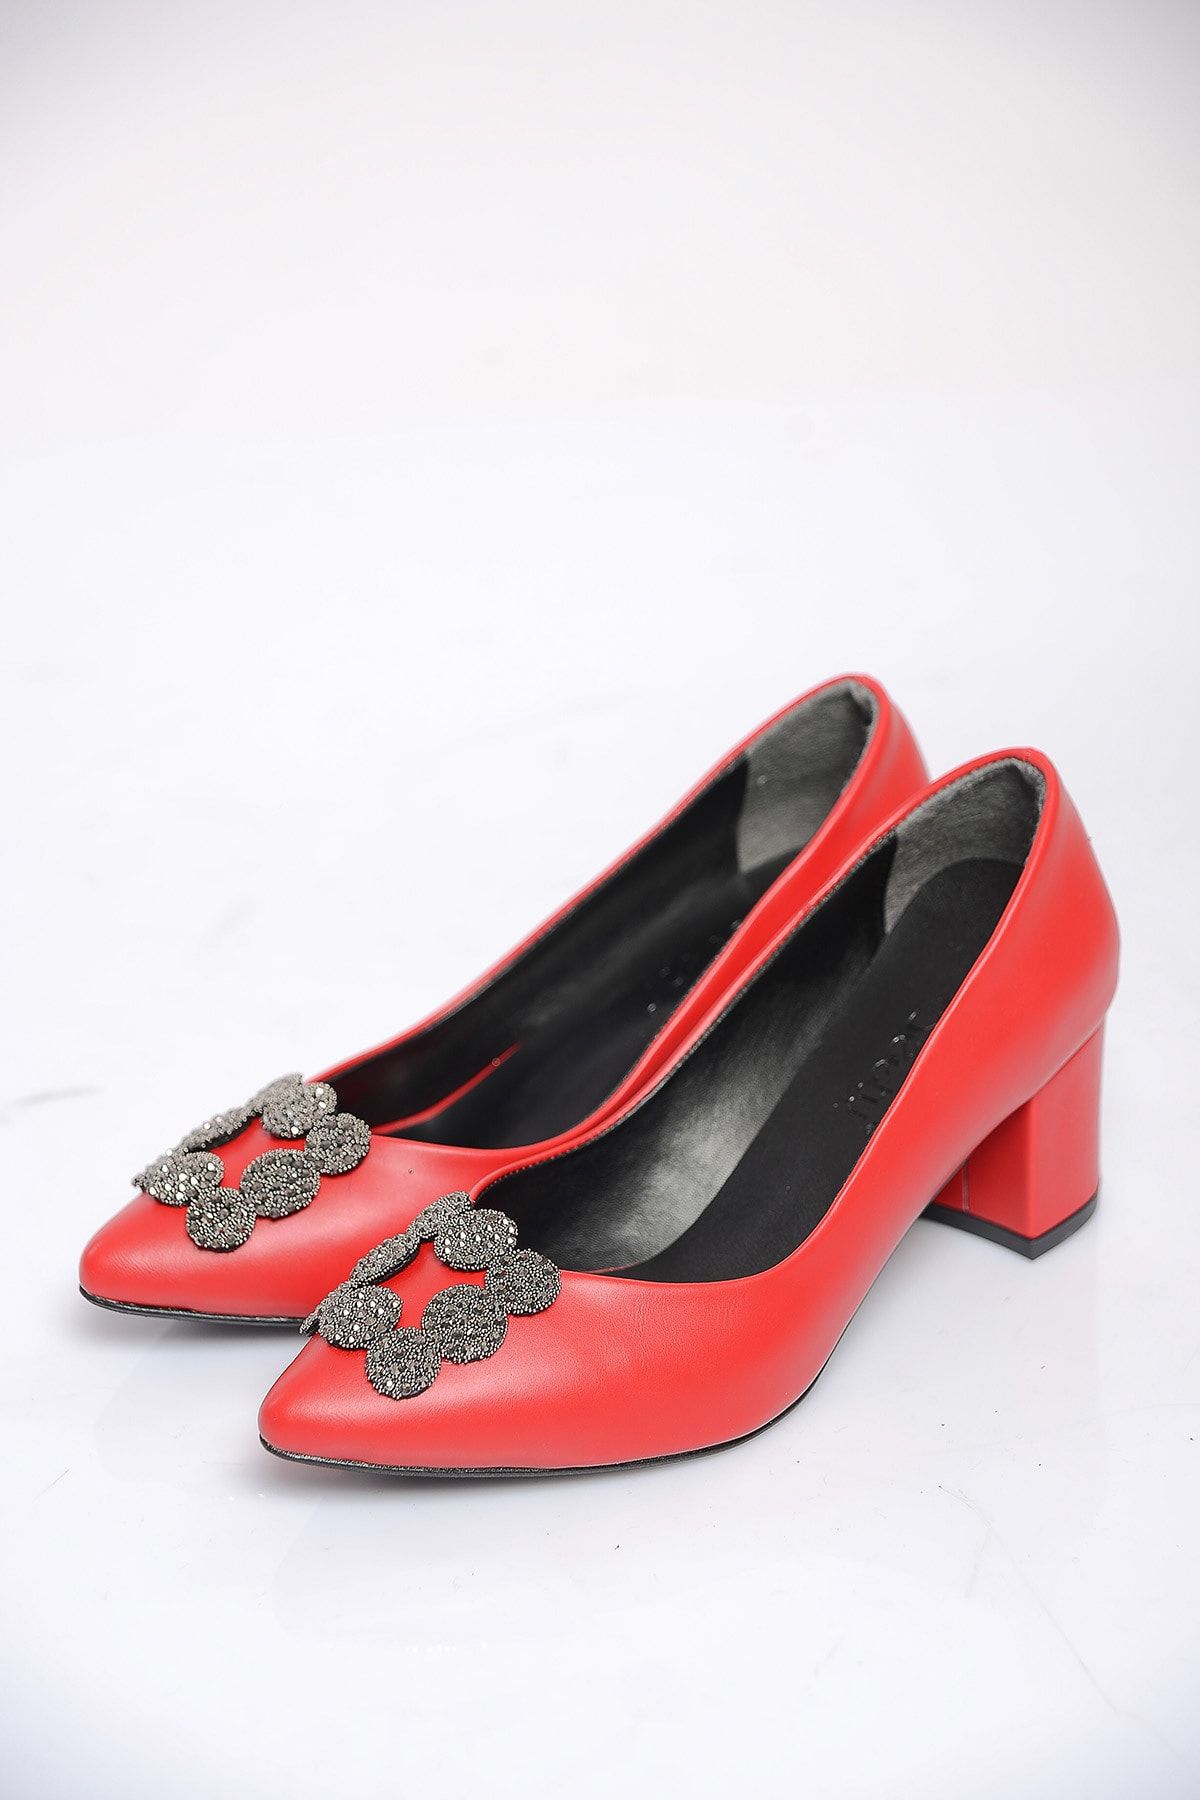 Shoes Time Kırmızı Cilt Kadın Topuklu Ayakkabı 19K 202